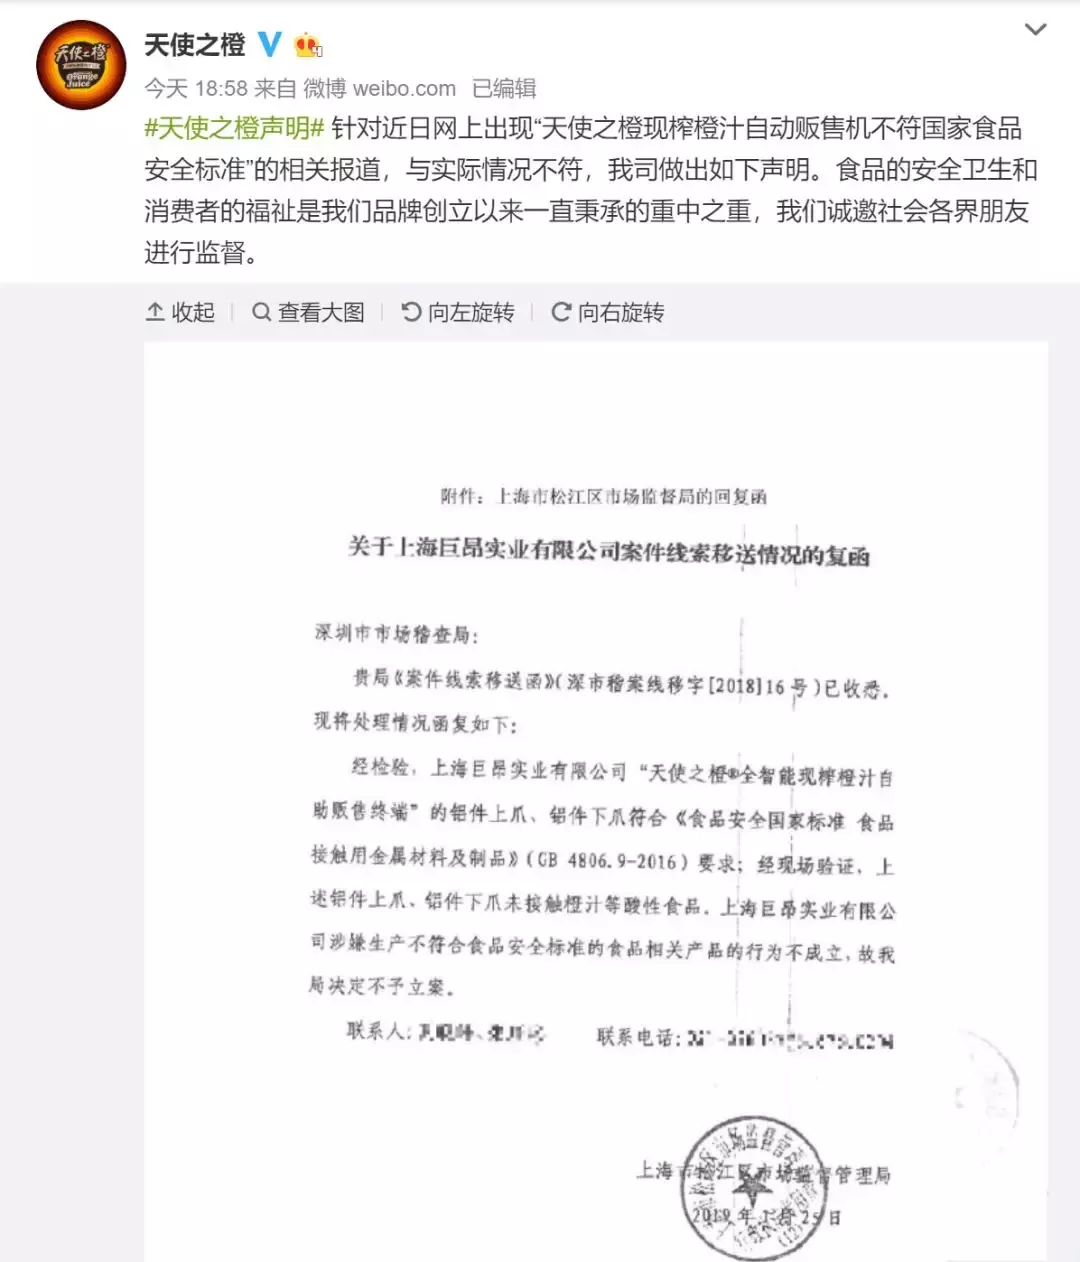 天使之橙在深圳吃百万罚单 上海为啥不予立案？